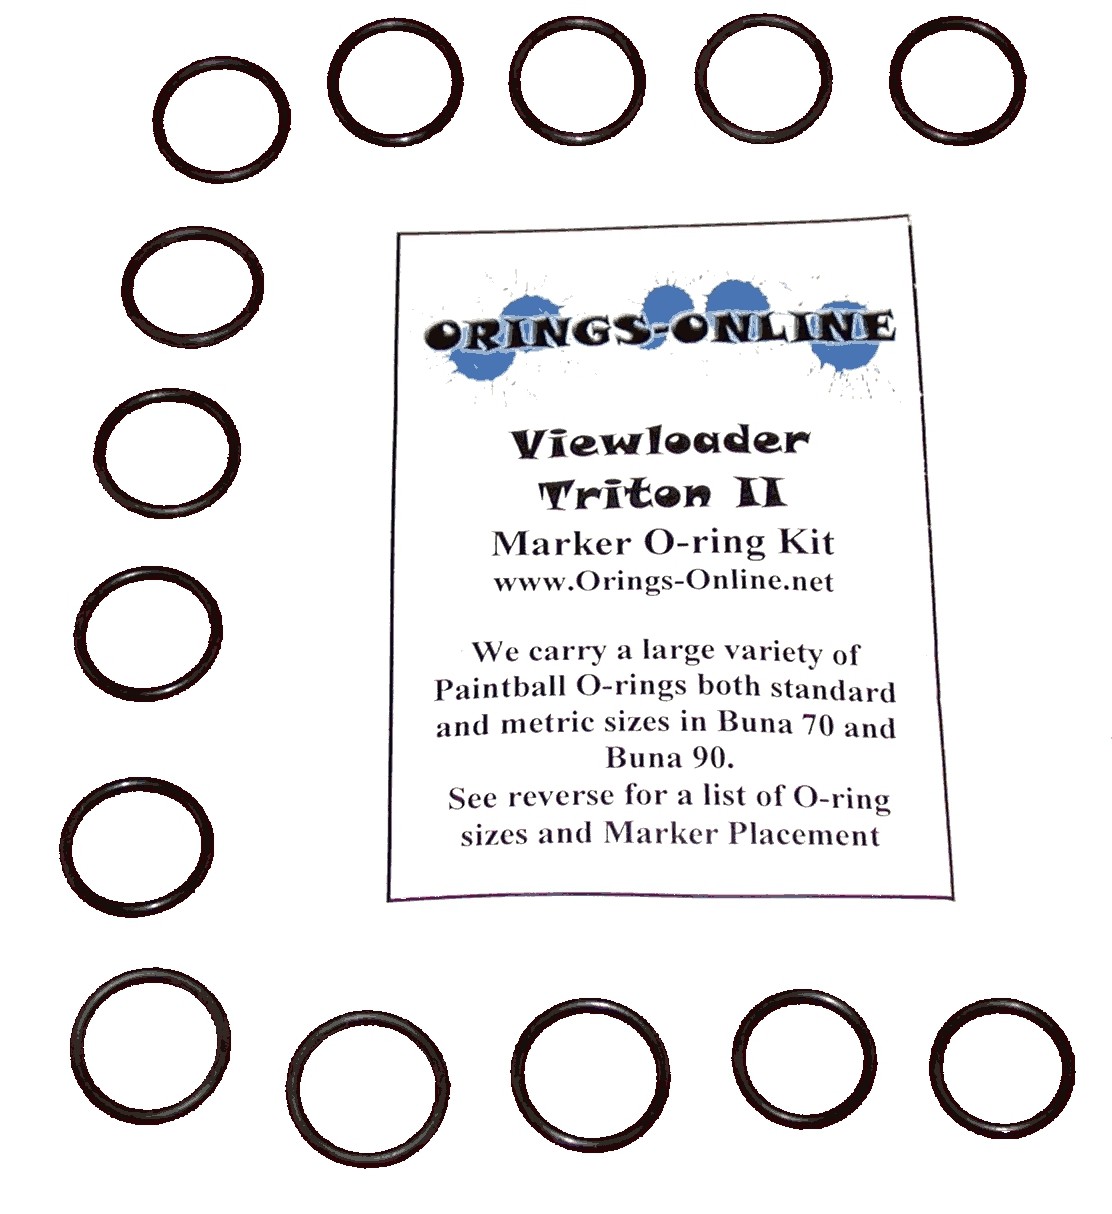 Viewloader Triton II Marker O-ring Kit